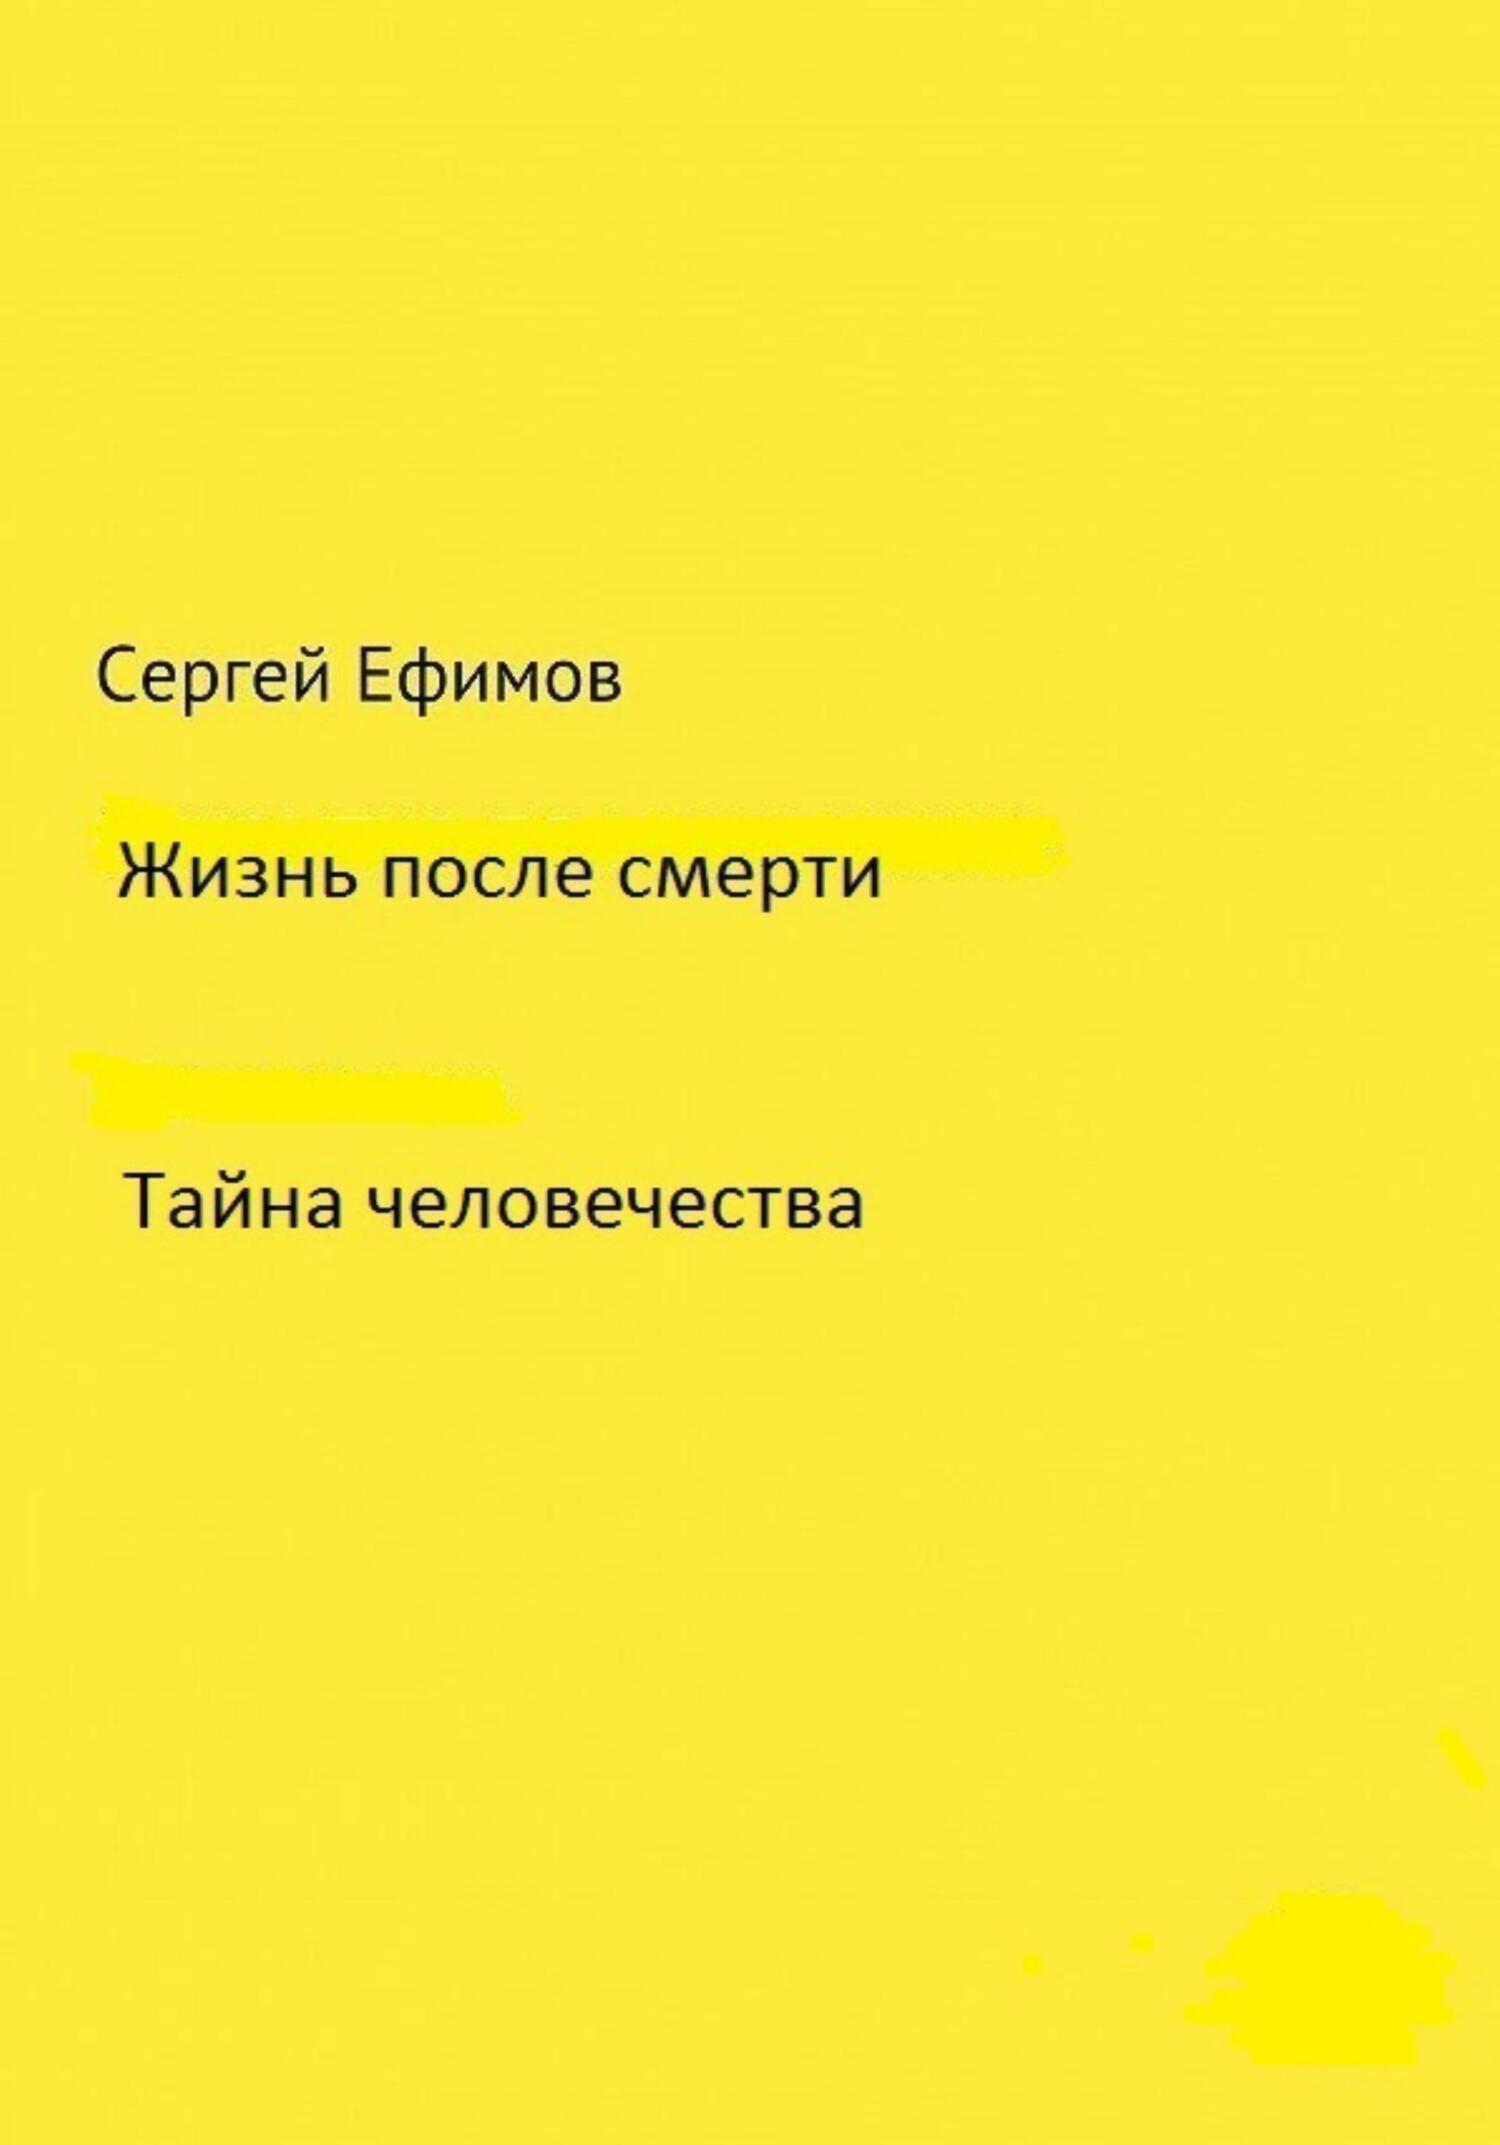 Жизнь после смерти - Сергей Викторович Ефимов